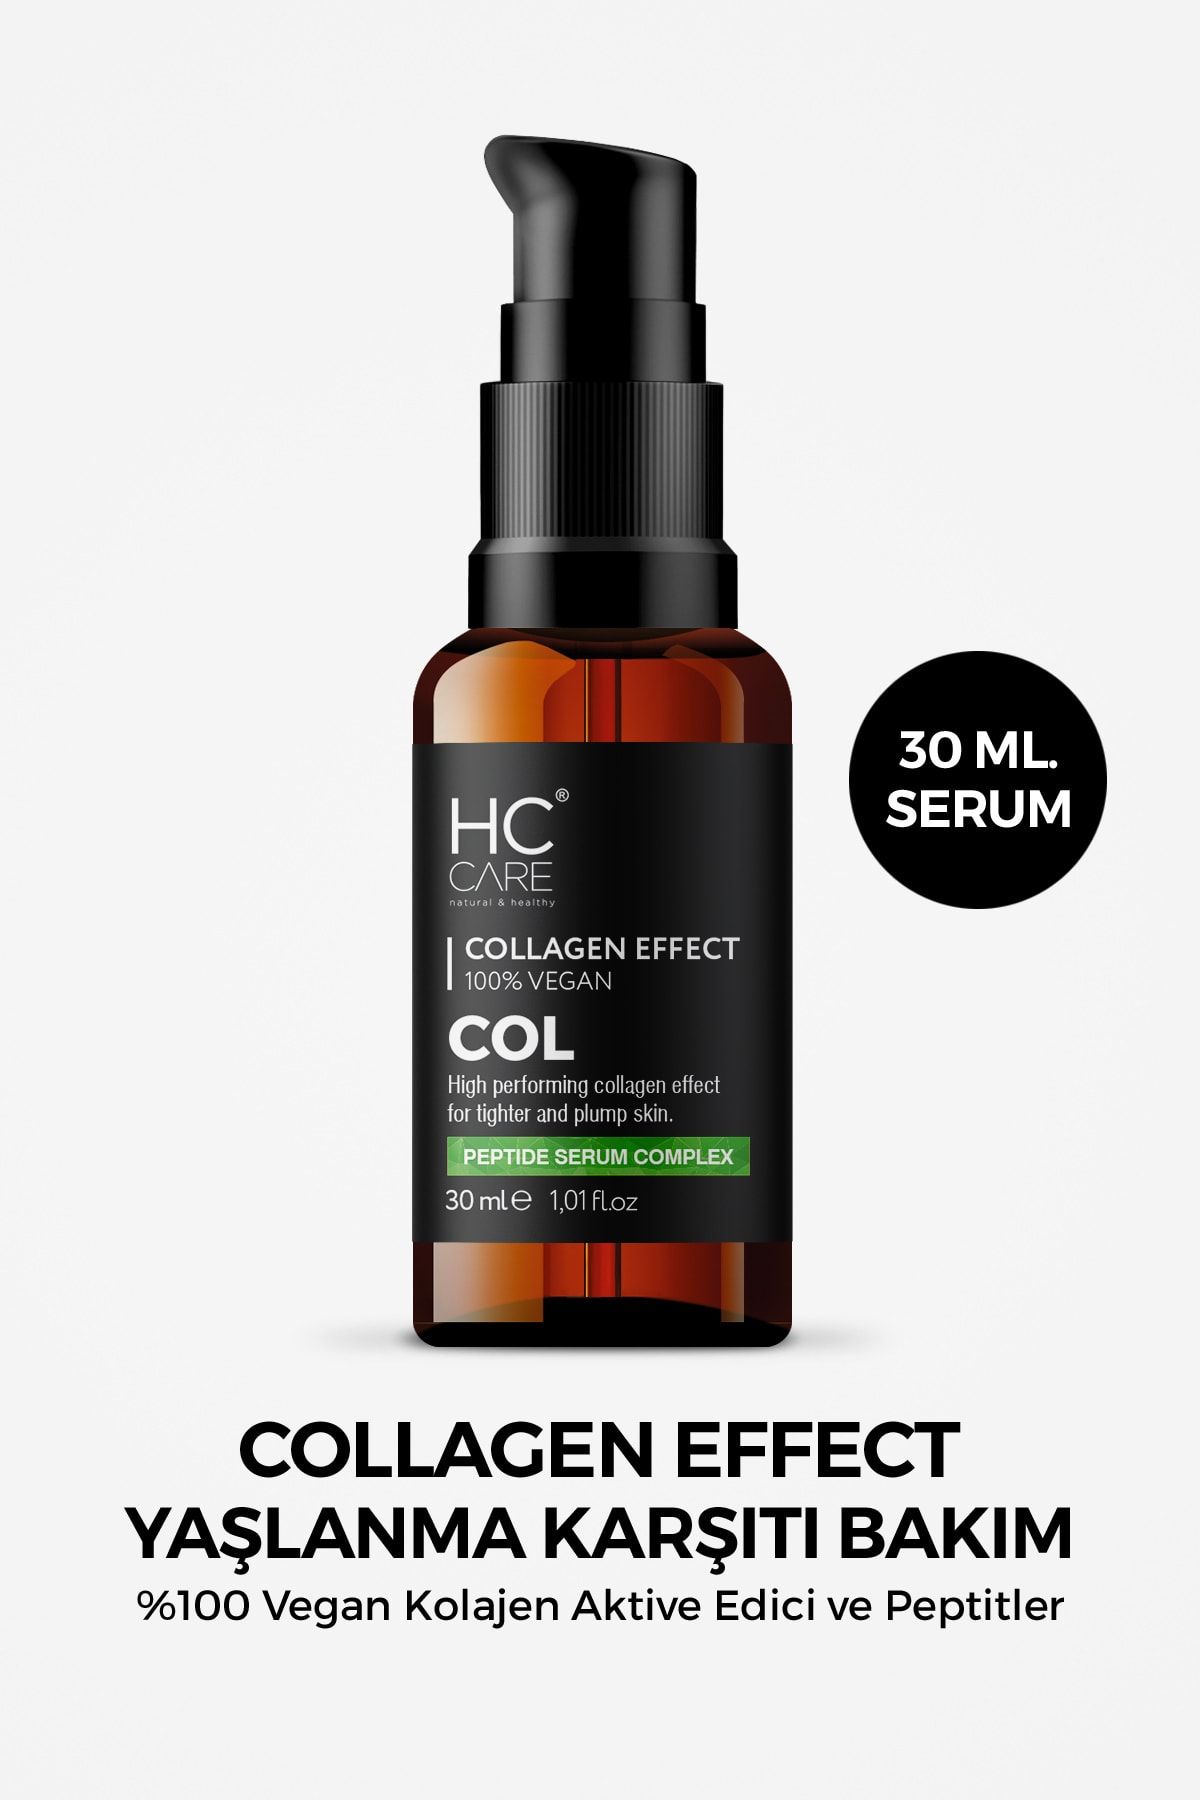 HC Care Collagen Effect, Bitkisel Kolajen Yaşlanma Karşıtı, Vegan Serum - 30 Ml.